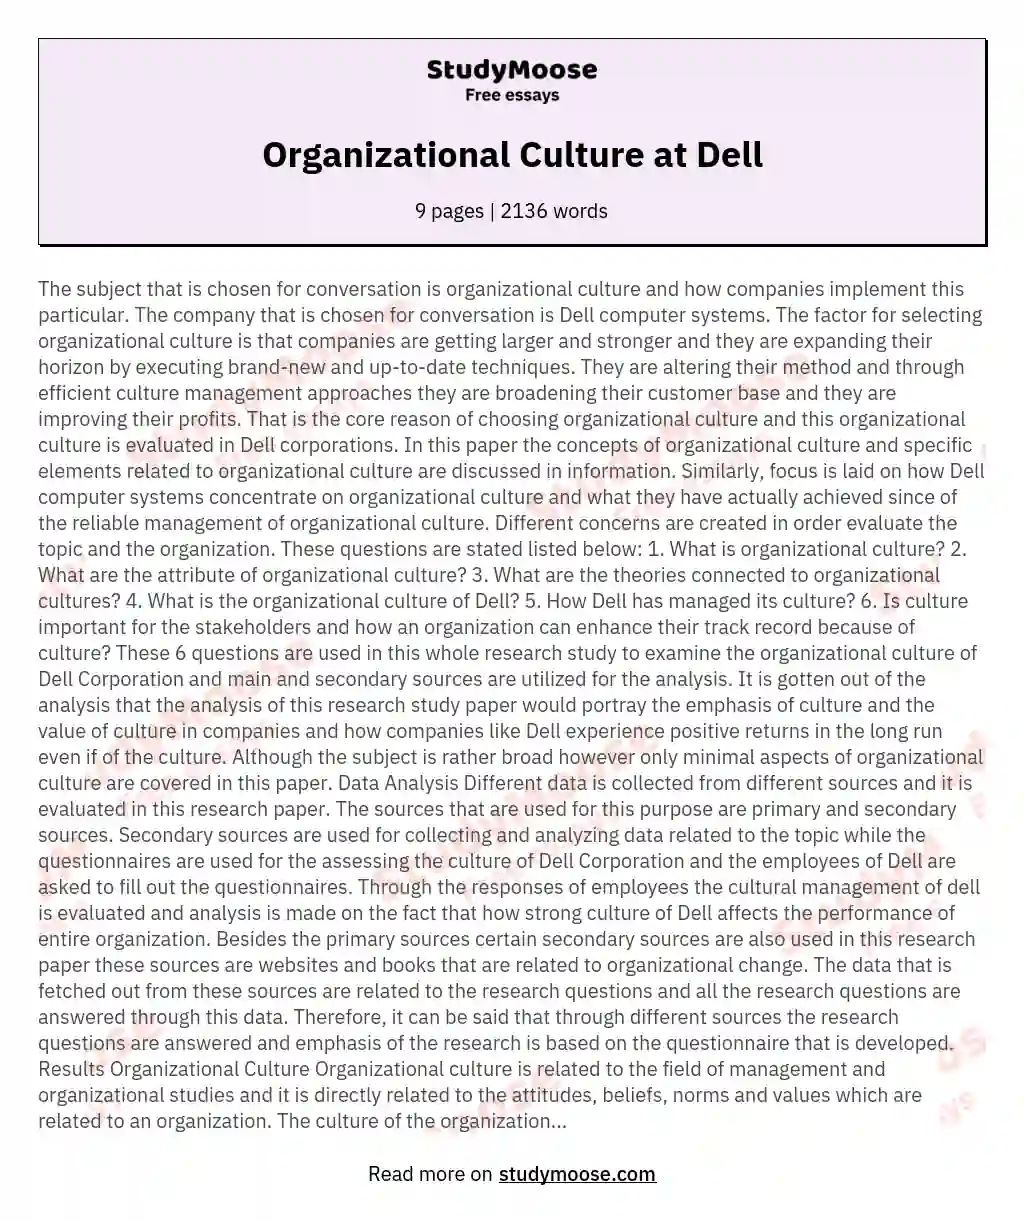 Organizational Culture at Dell essay